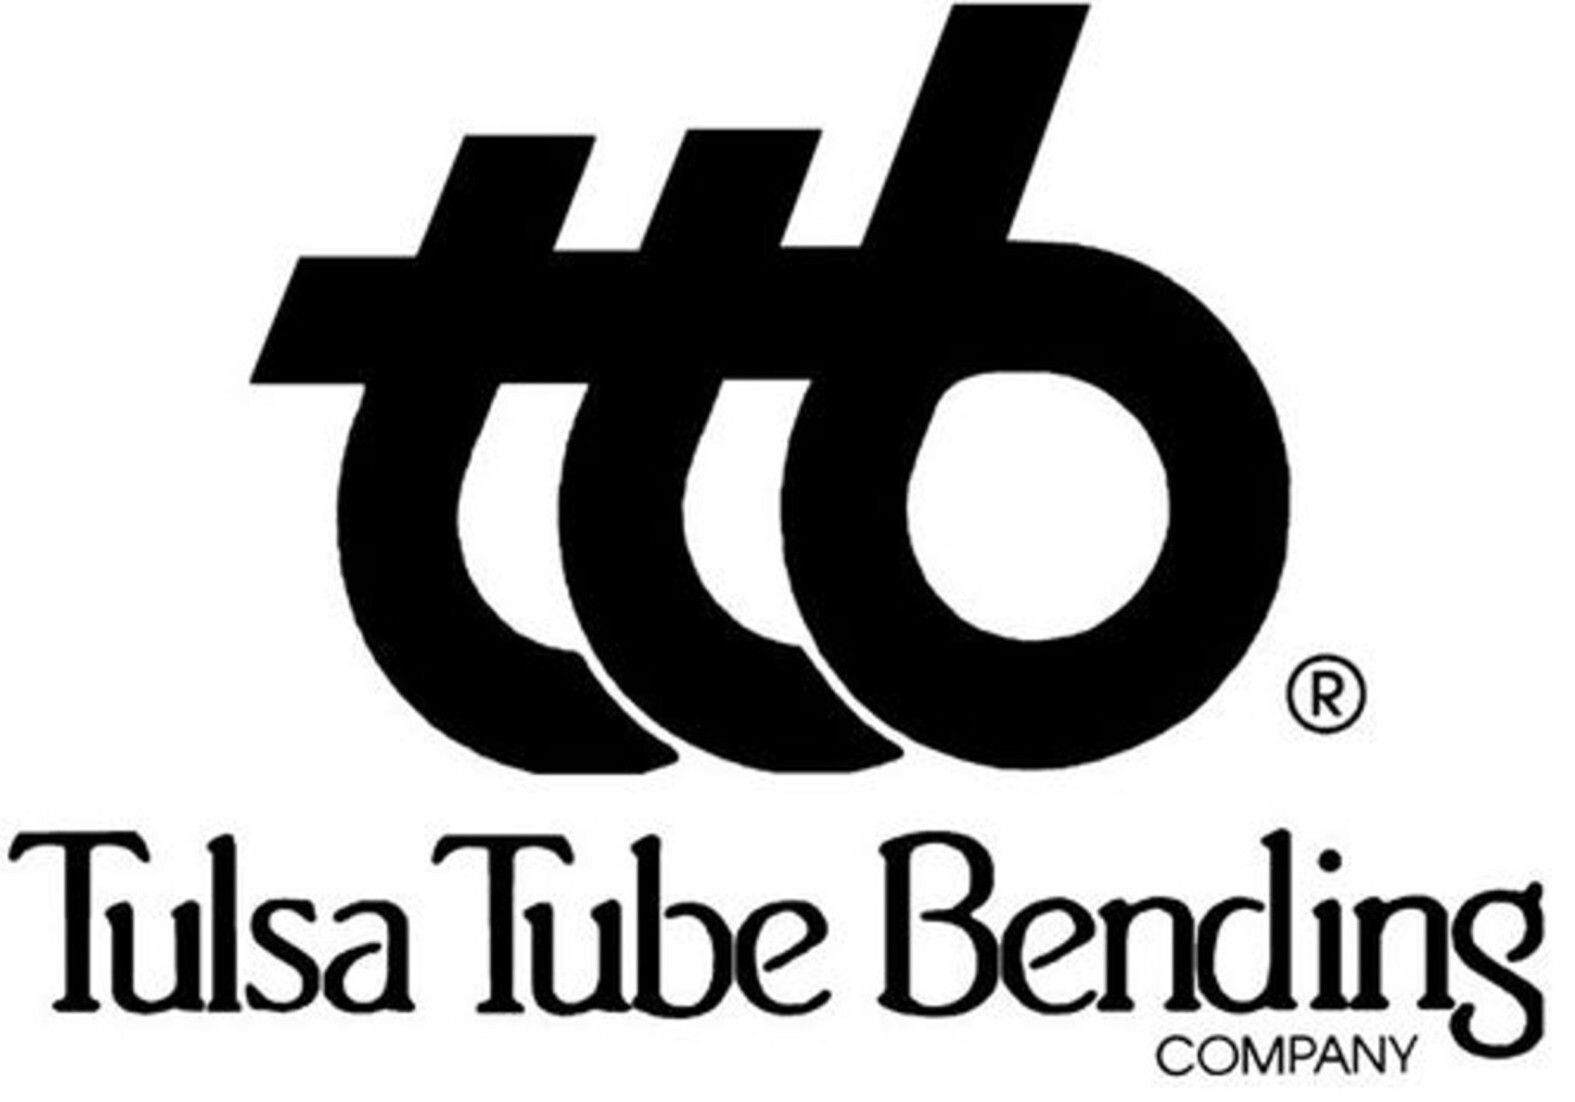 Tulsa Tube Bending Company